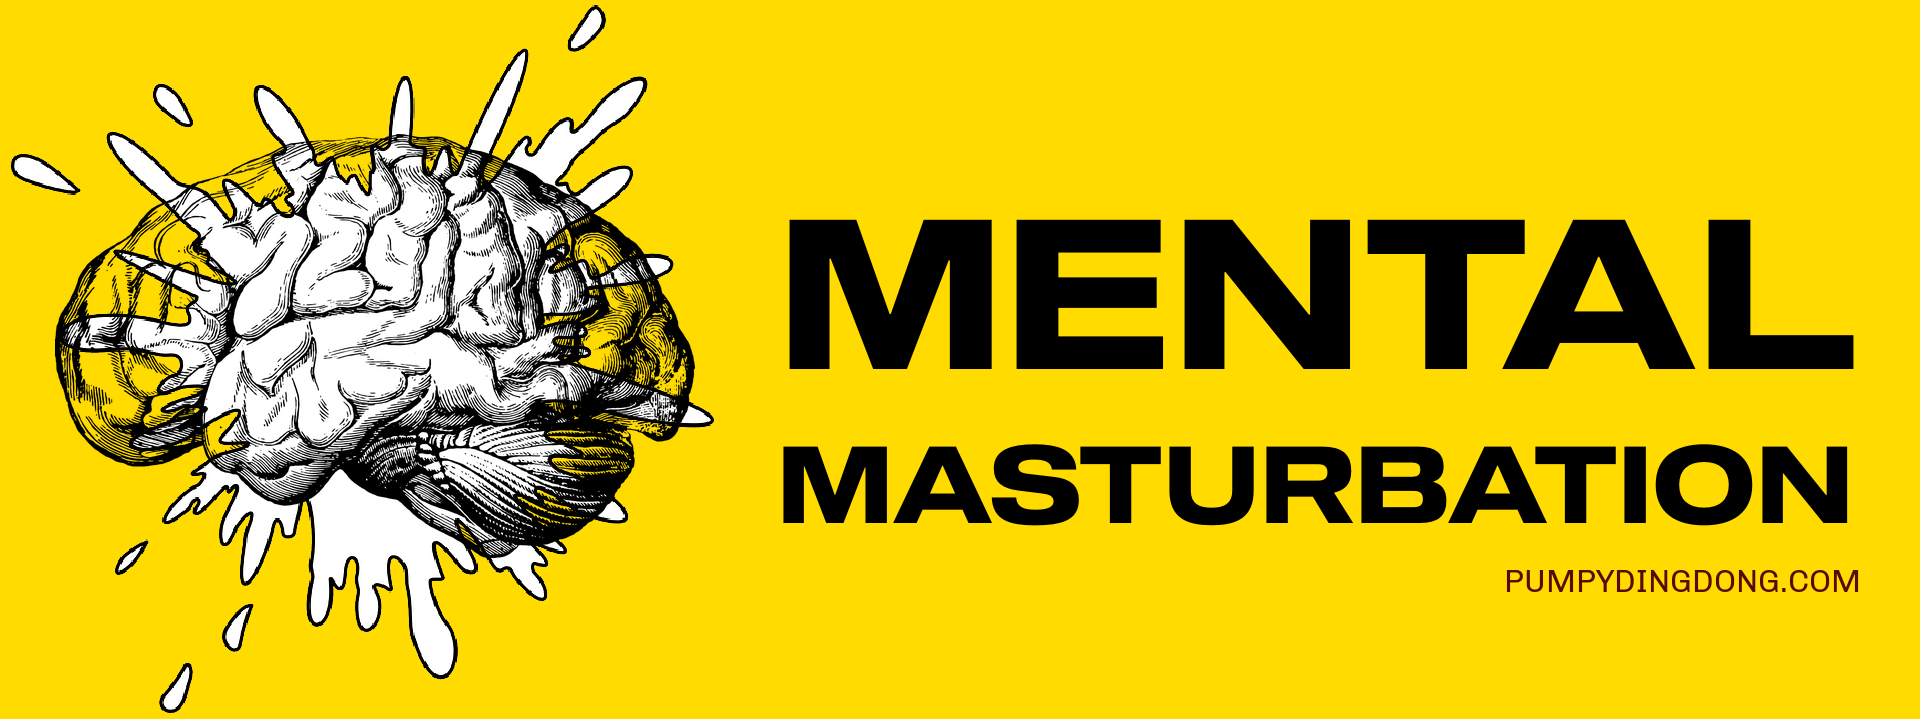 mental masturbation